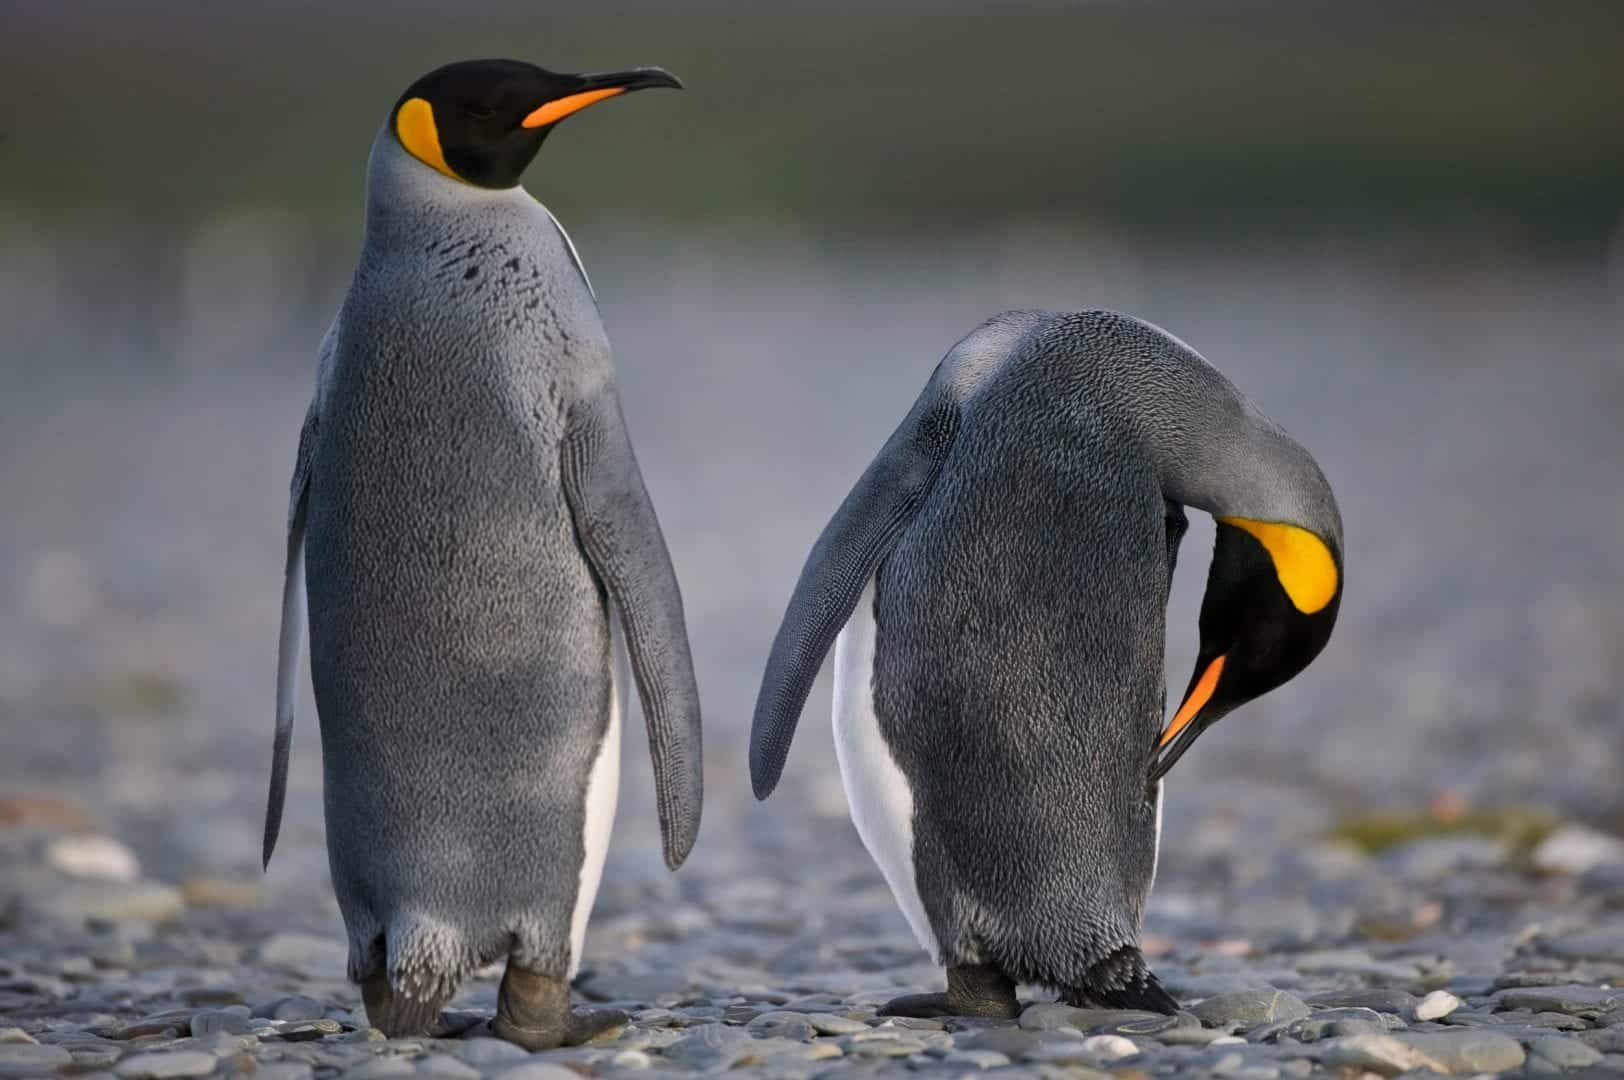  Pingouin - Caractéristiques, alimentation, reproduction et principales espèces